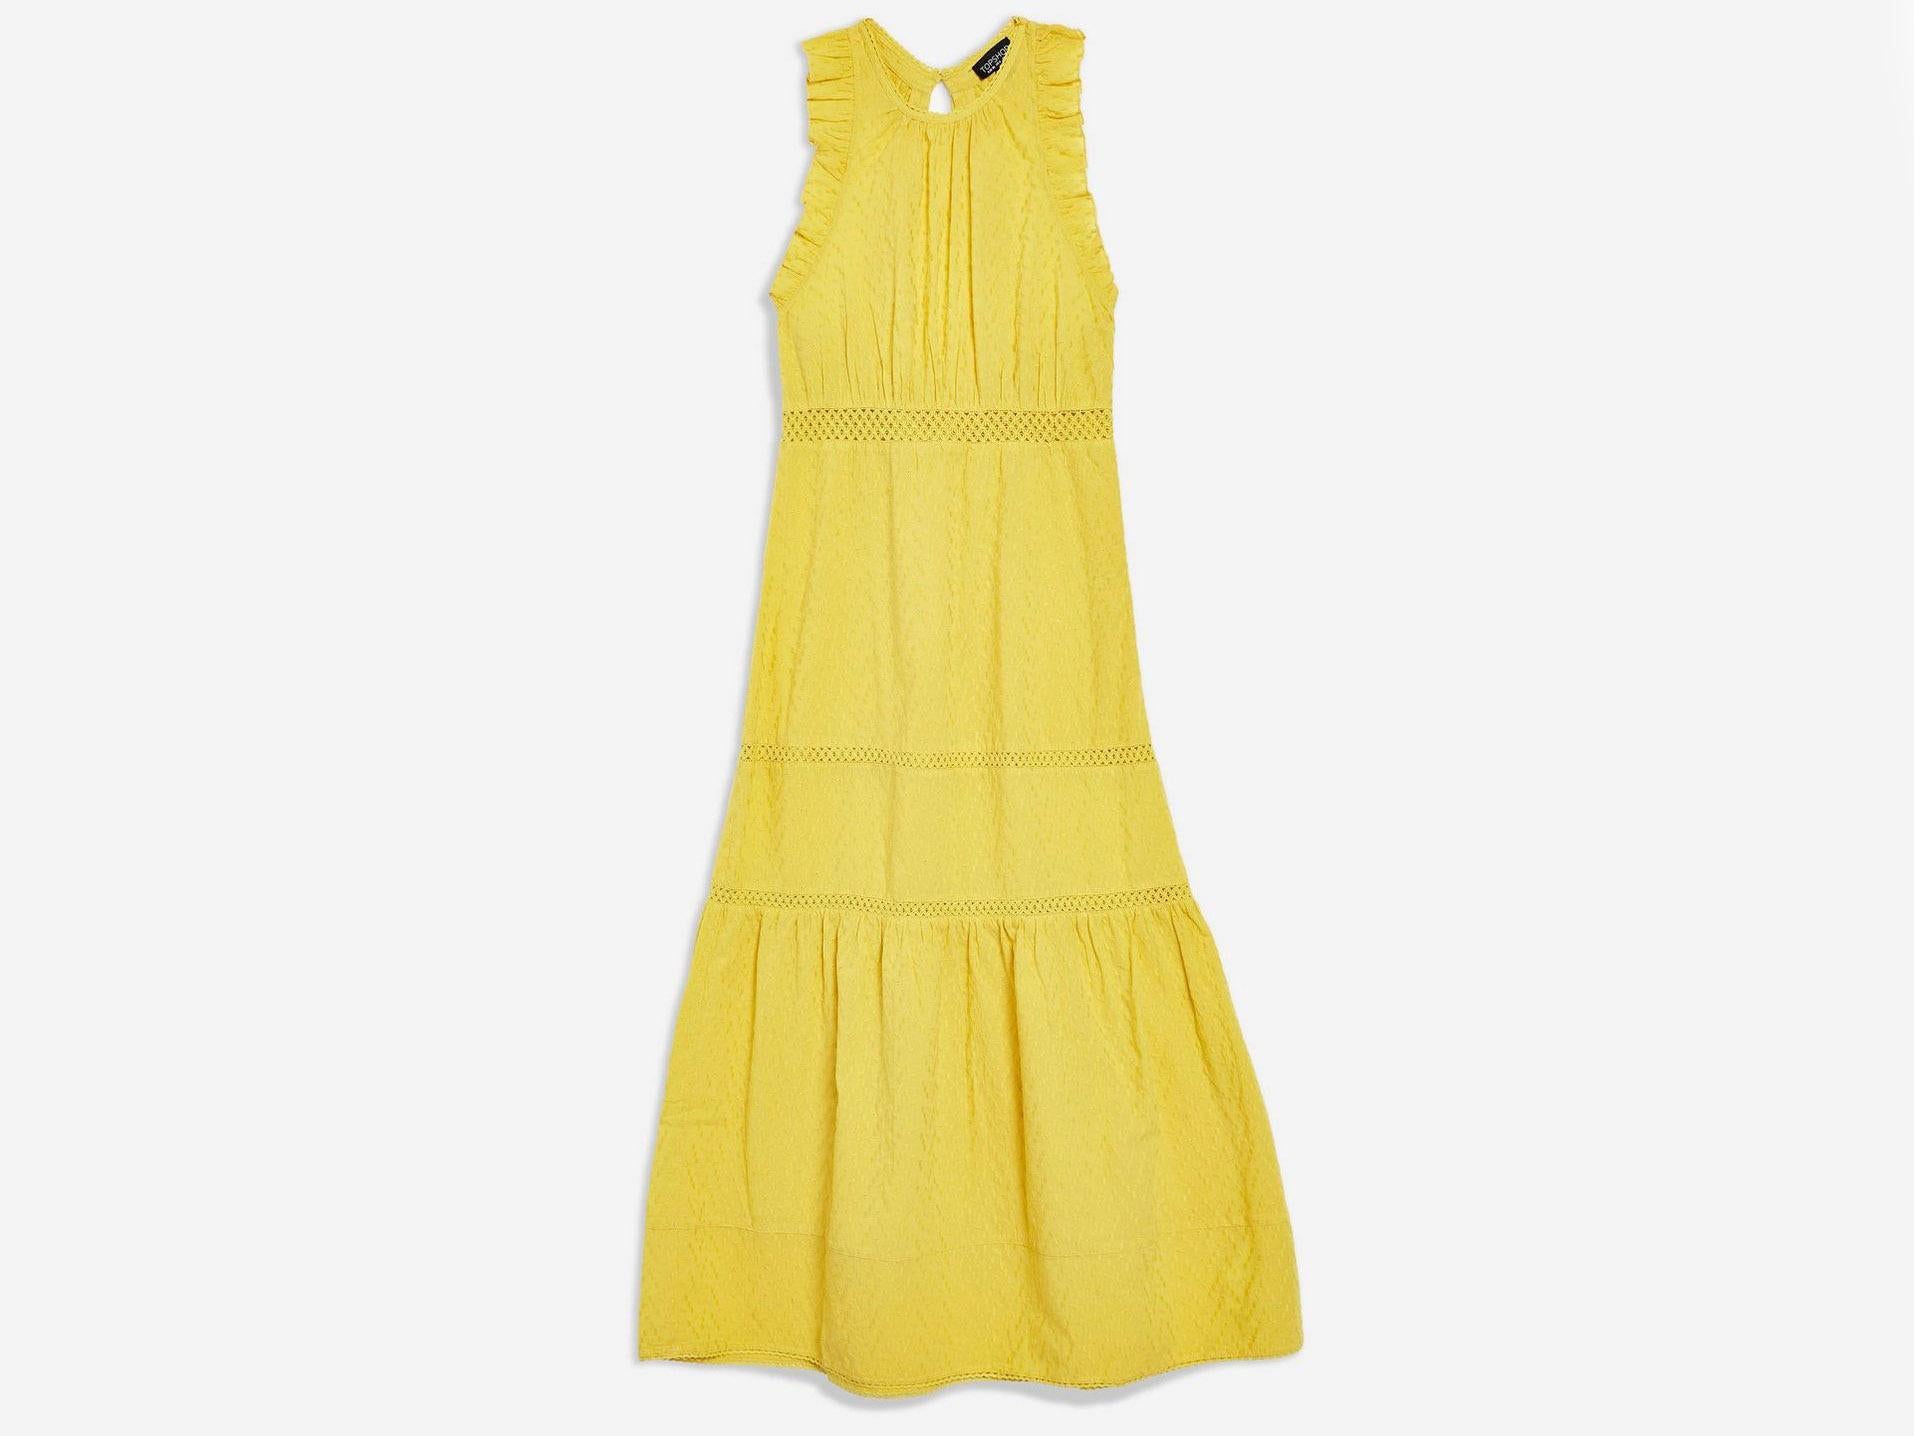 Broderie Maxi Dress, £49, Topshop